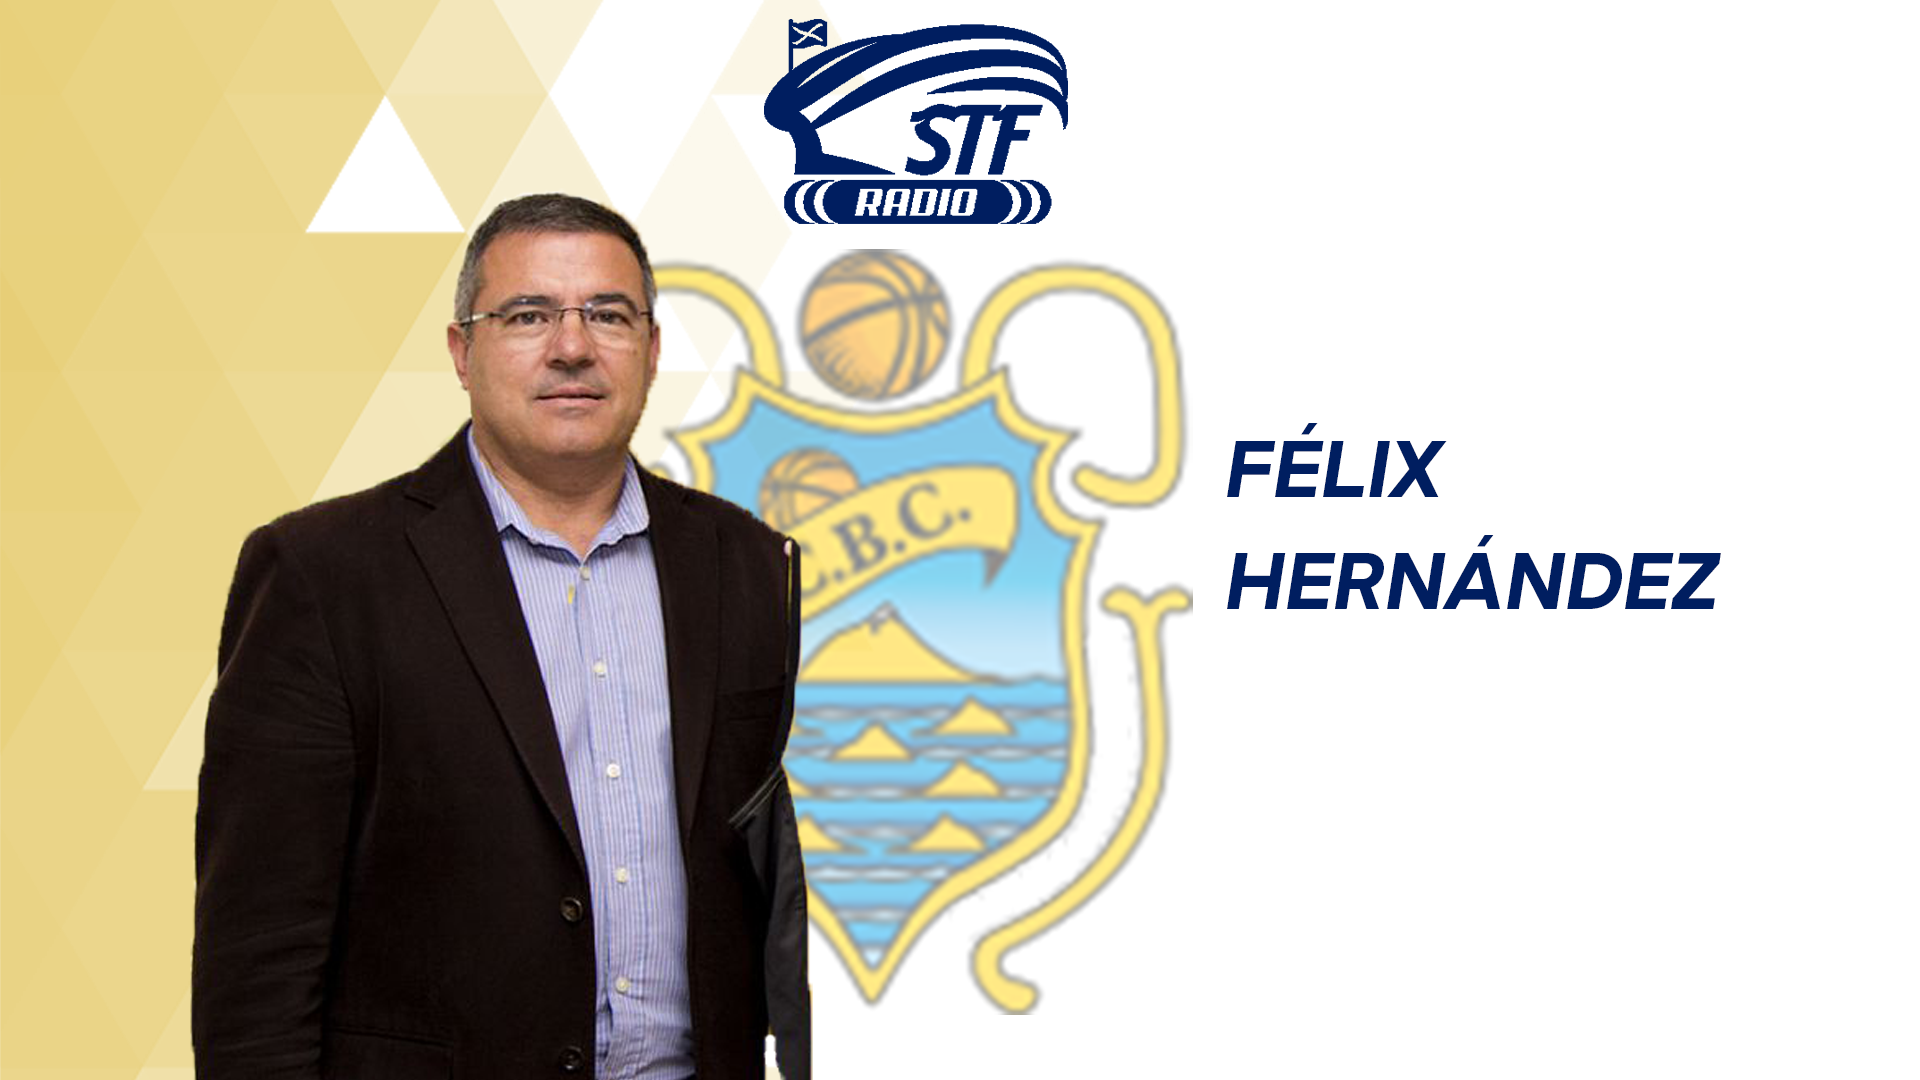 Félix Hdez en STF Radio: “Hay que cambiar el modelo de la Euroliga y Eurocup, no es el mejor”